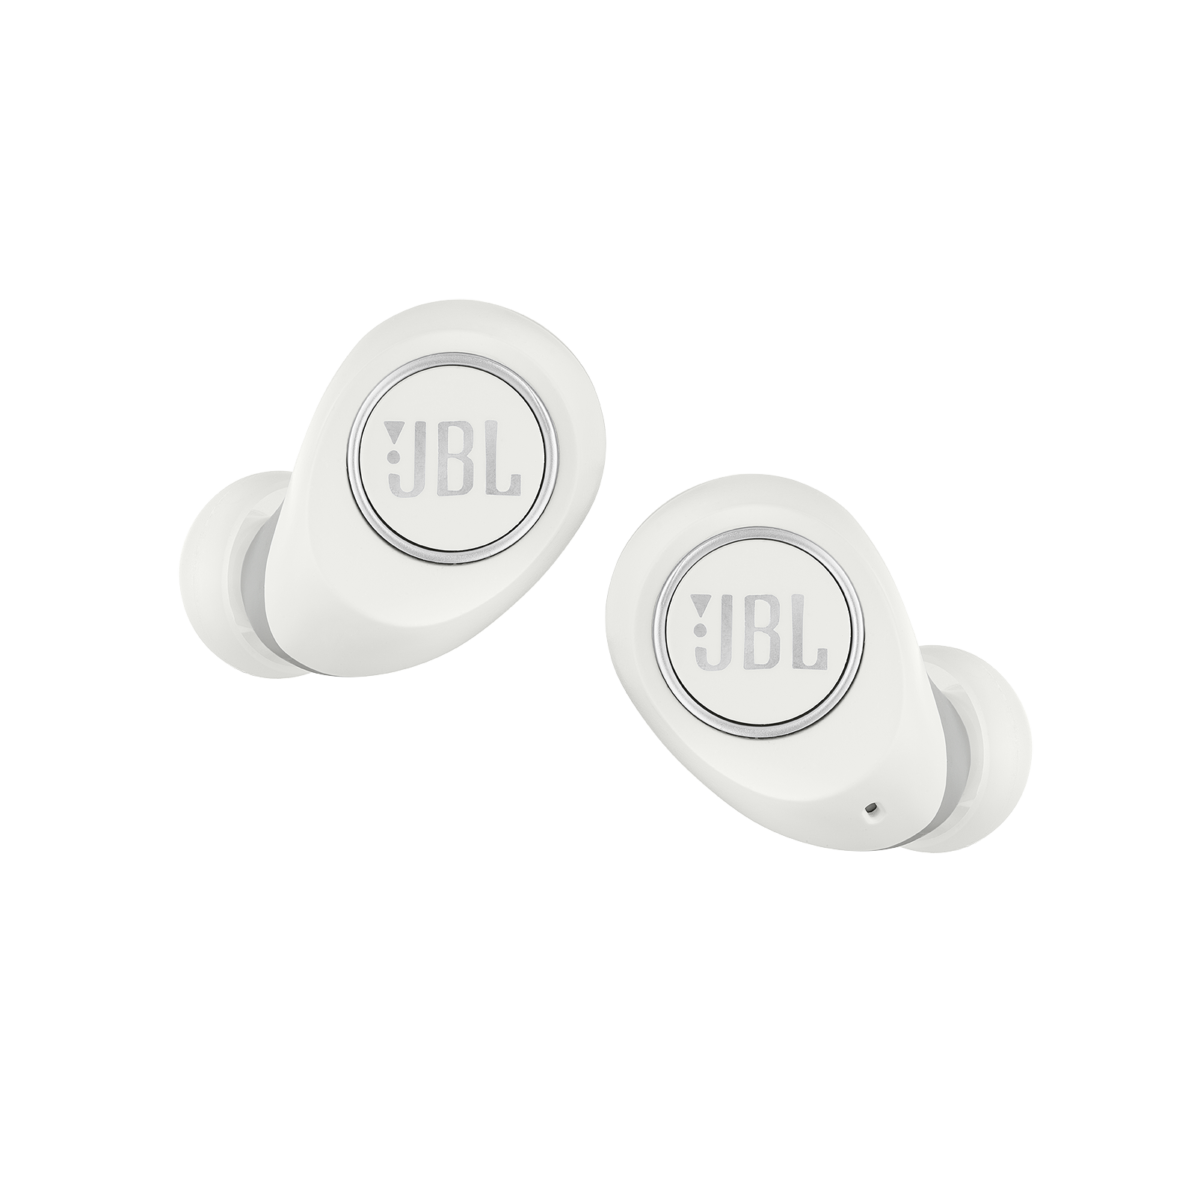 JBL Free Vezeték Nélküli Fülhallgató Fehér - Kiegészítők Headset